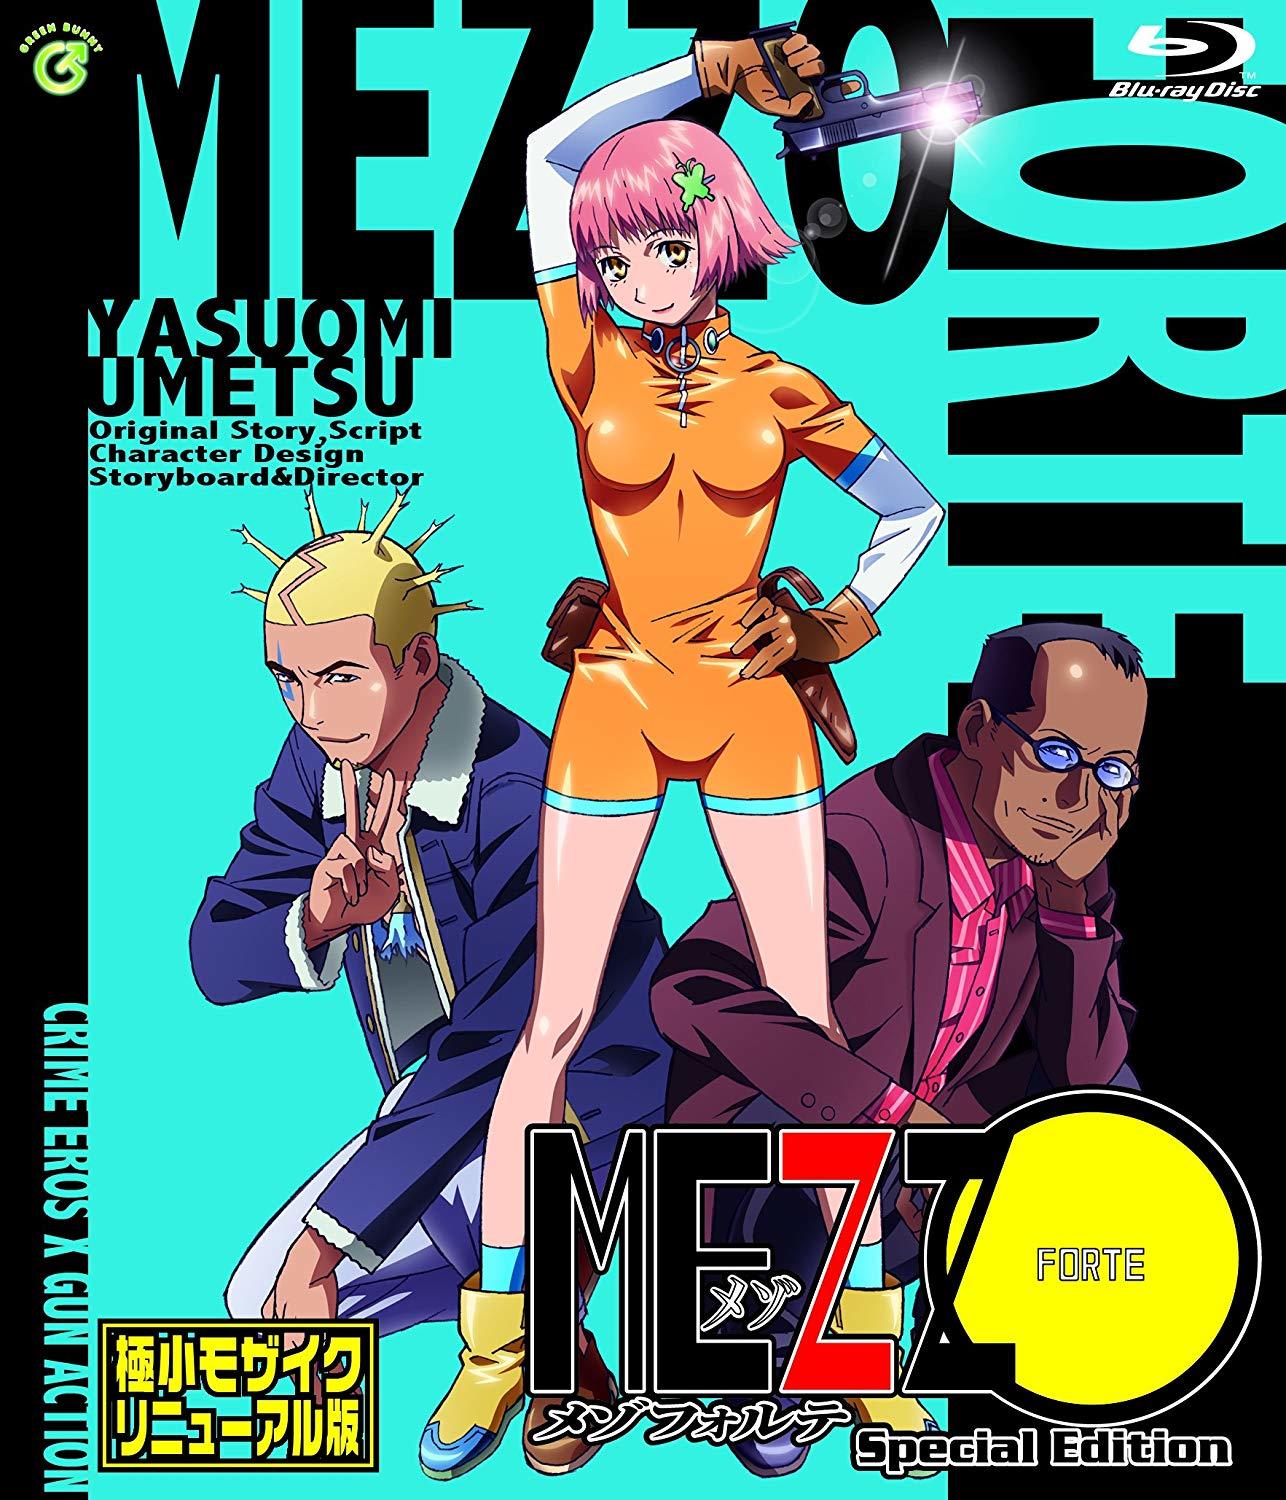 絶賛商品 MEZZO メゾ【全7巻+メゾフォルテ】レンタル DVD - DVD/ブルーレイ